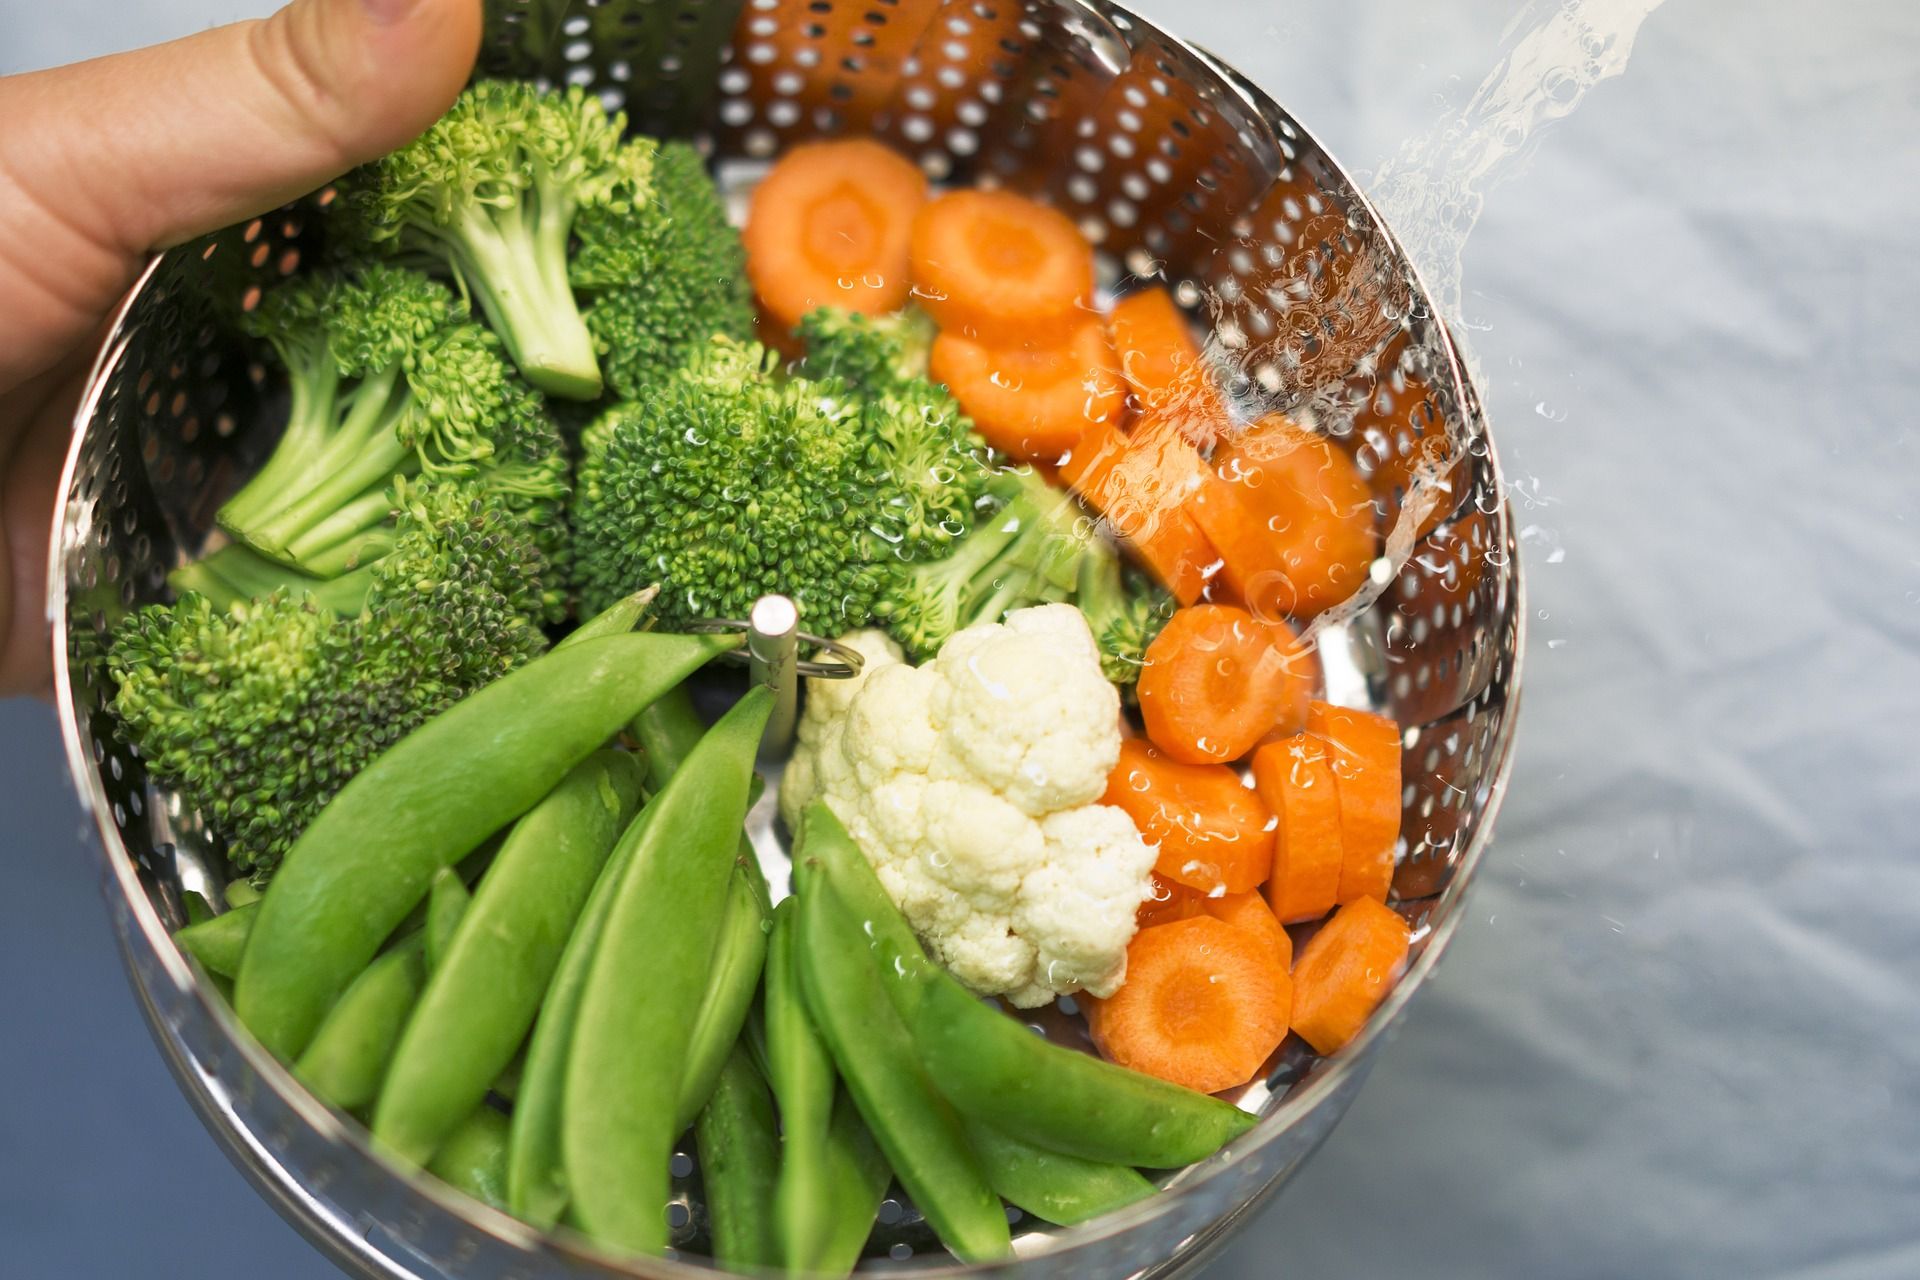 Sigue estos trucos fáciles para cocinar verduras